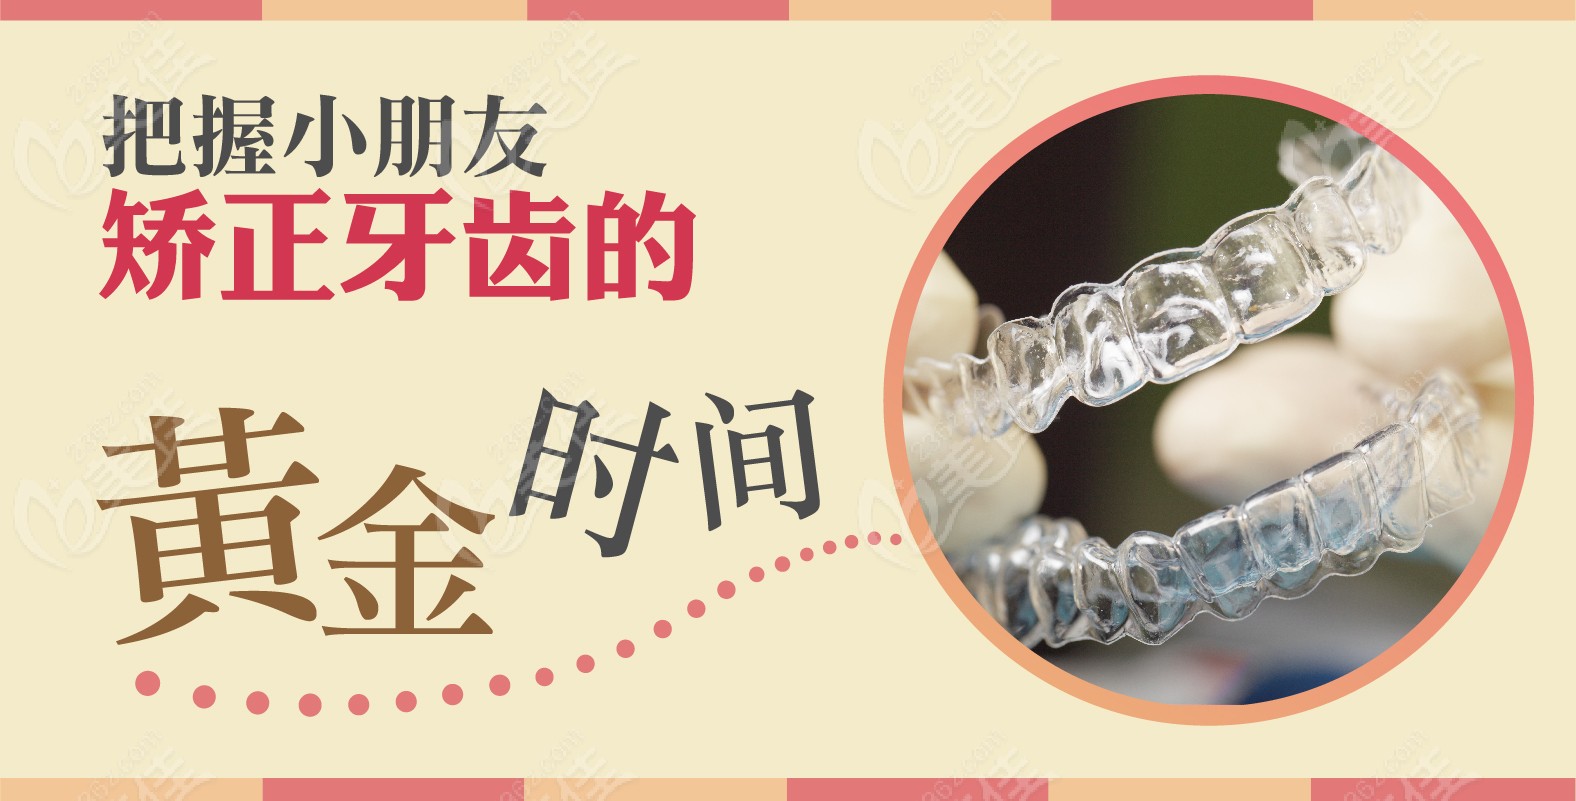 张彩霞医生做儿童牙齿早期干预比较好